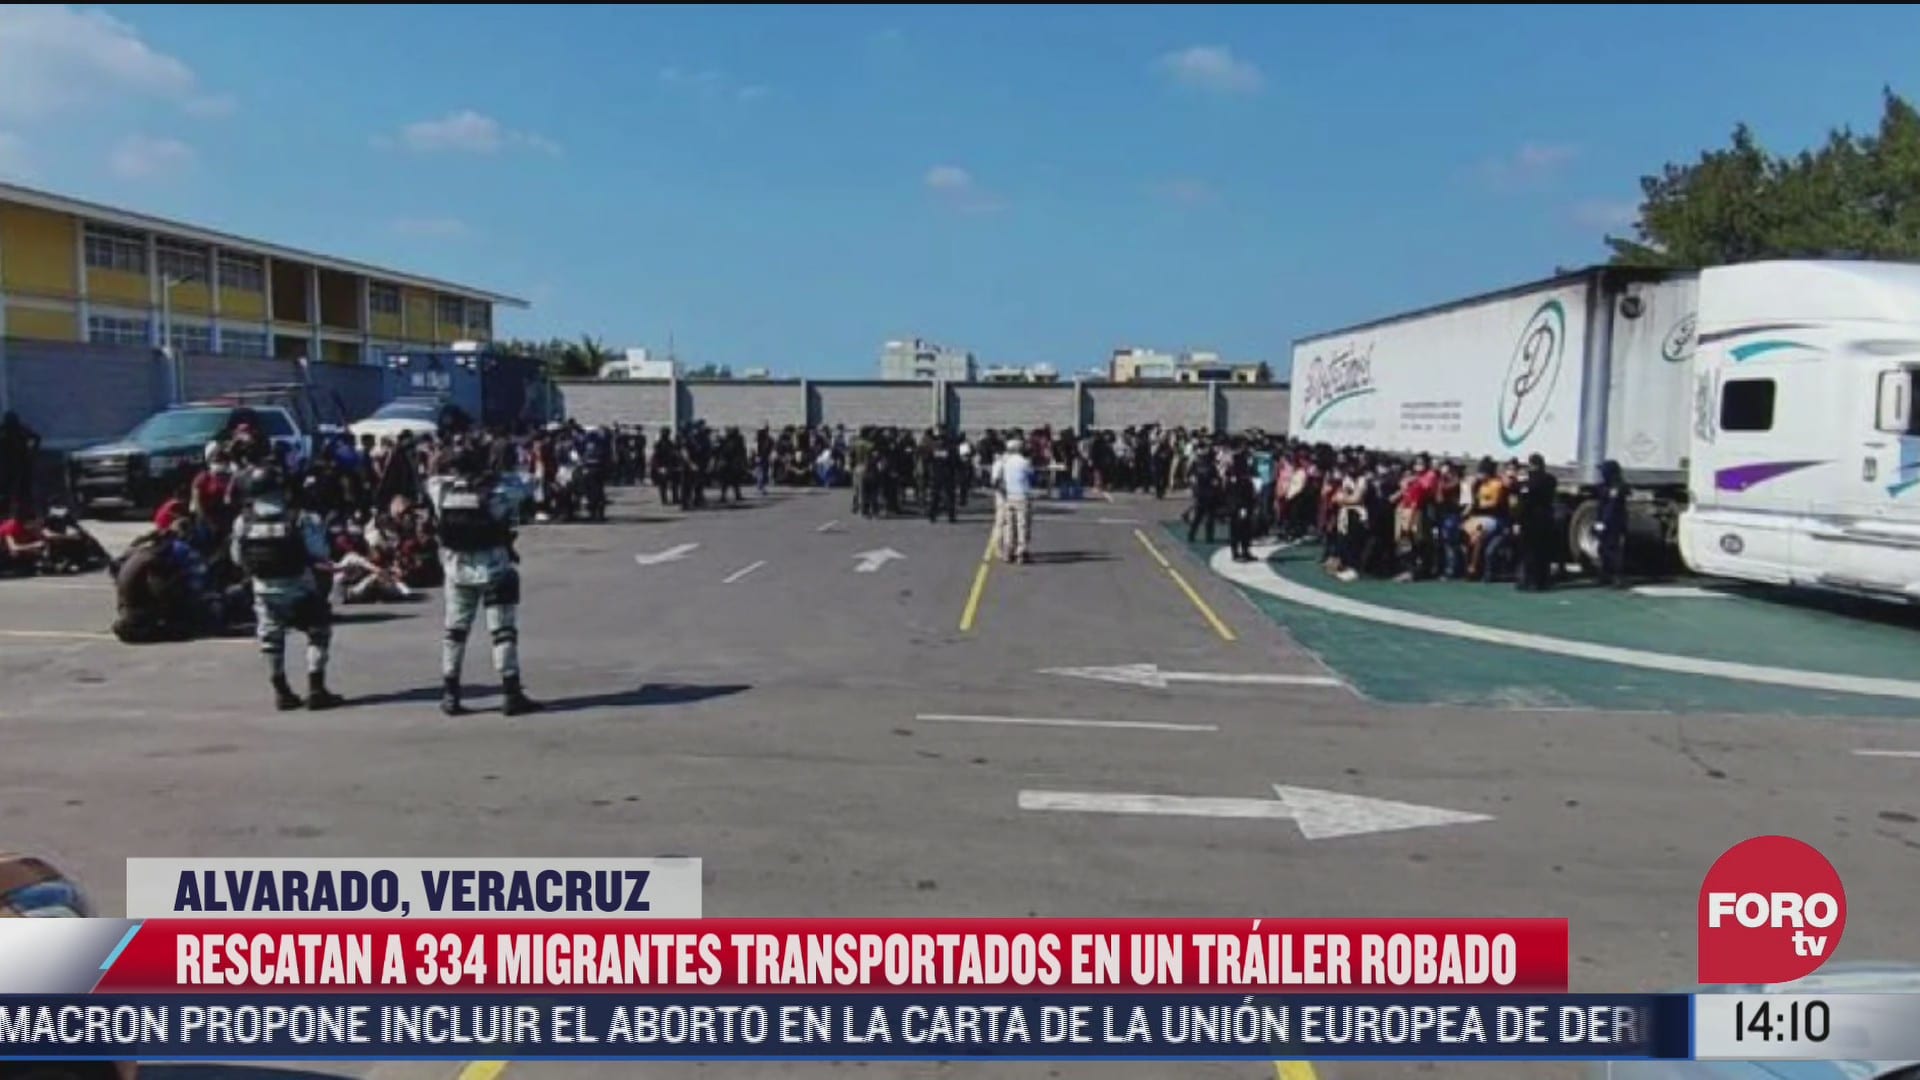 policias rescatan a 334 migrantes que viajaban en un trailer en alvarado veracruz